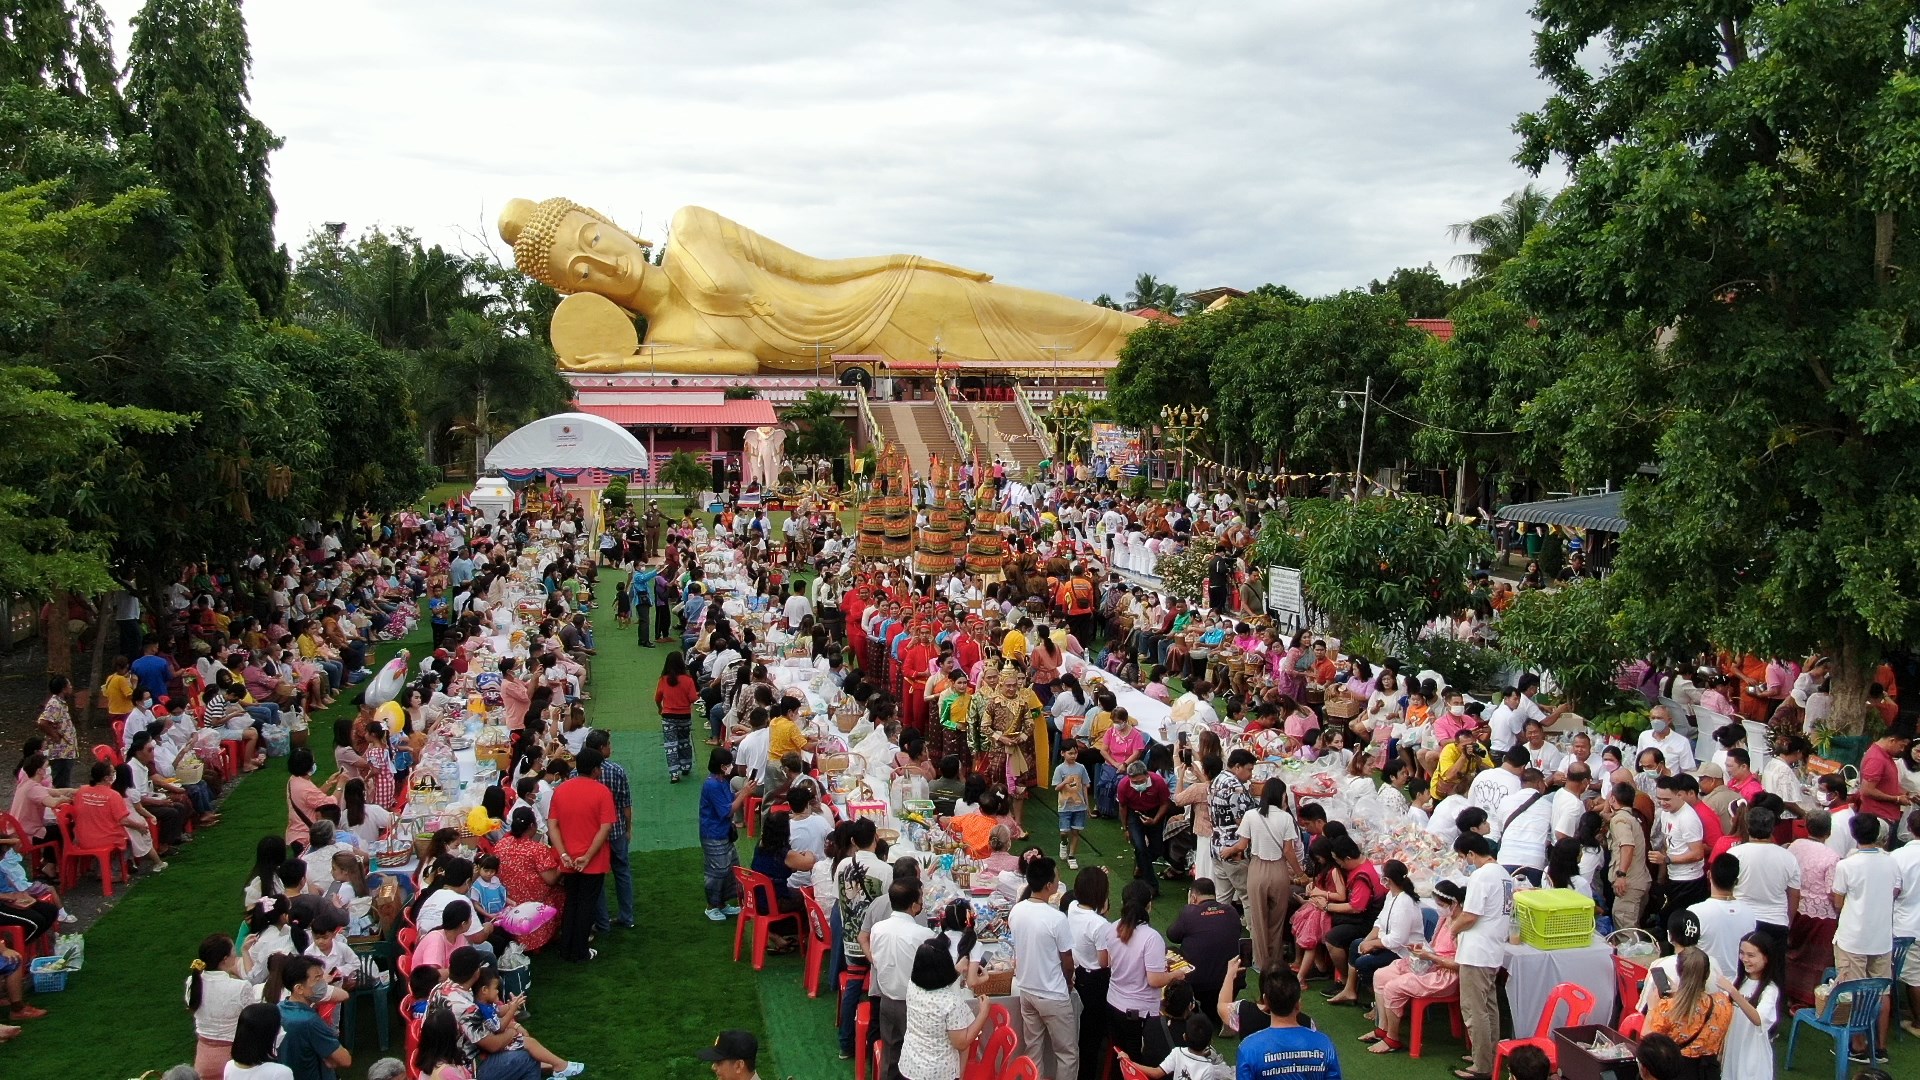 พุทธศาสนิกชนชาวตำบลกกโก จังหวัดลพบุรี สืบสานประเพณีตักบาตรเทโวโรหณะ กราบนมัสการพระพุทธไสยาสน์องค์ใหญ่ เนื่องในเทศกาลวันออกพรรษา ประจำปี พ.ศ.2566